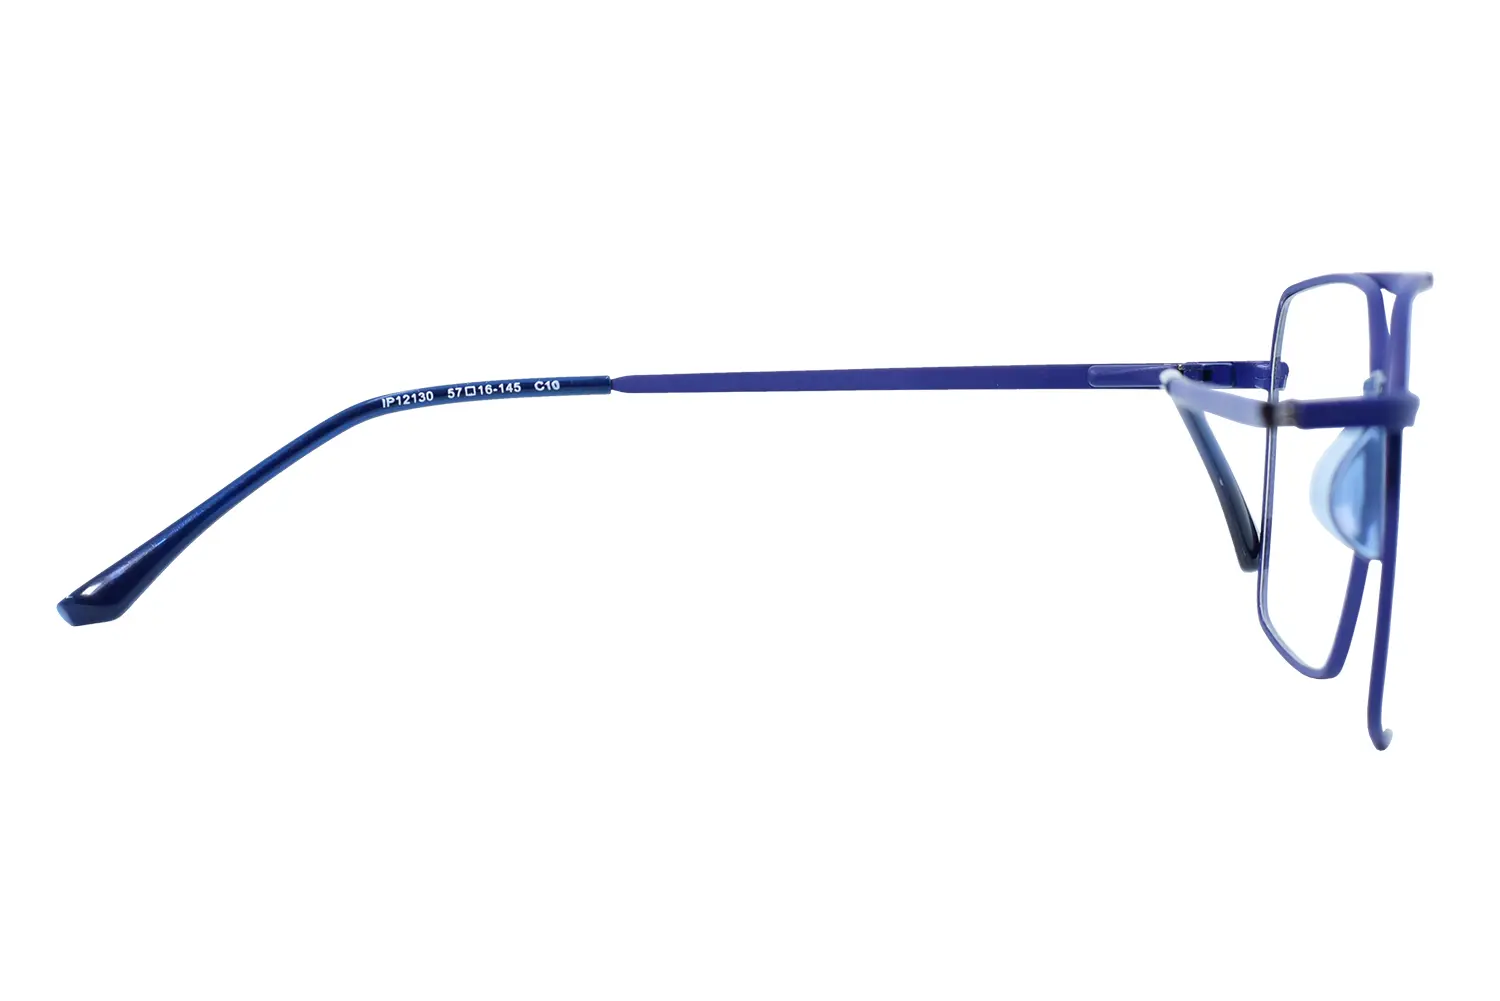 عینک طبی gucci مدل ip12130 c10 - دکترعینک